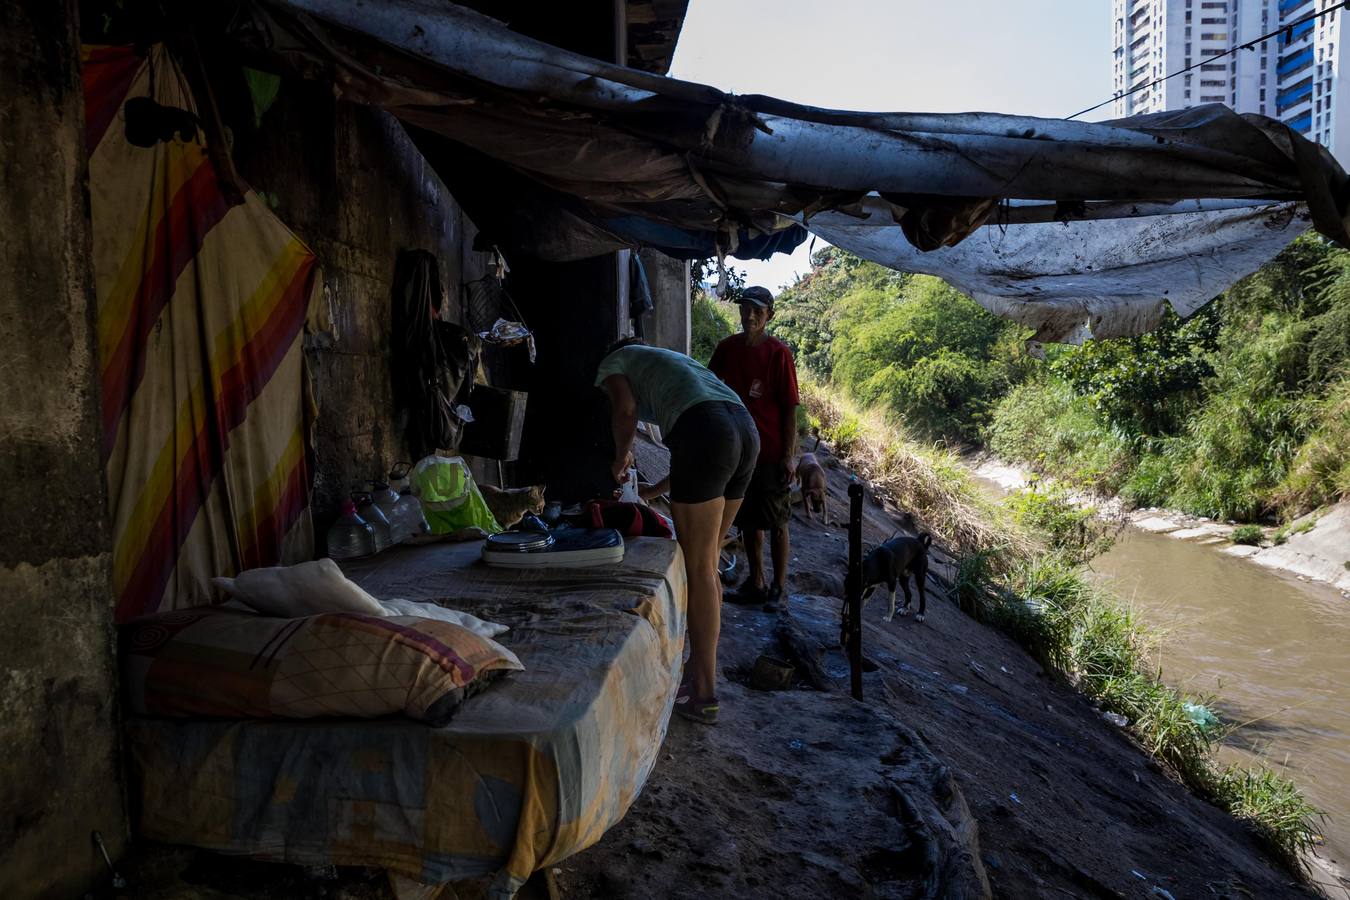 La severa crisis económica y social de Venezuela ha modificado los paisajes de la capital, no solo por la existencia de ciudadanos que buscan comida en la basura, sino también por la presencia de personas que han tomado los puentes como lugares de abrigo, algunos ya habitados por antiguos residentes